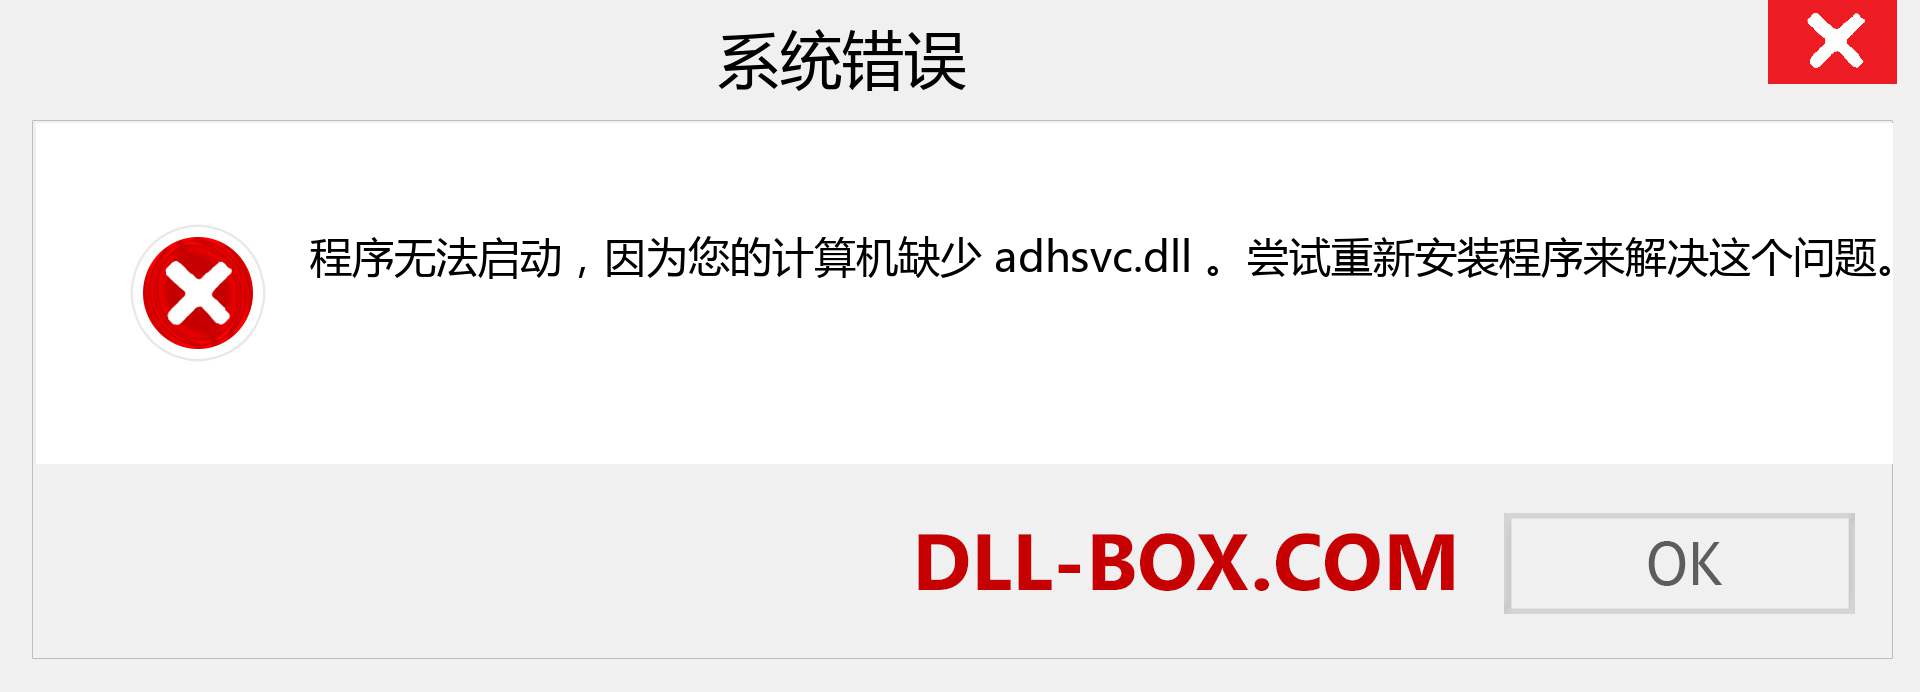 adhsvc.dll 文件丢失？。 适用于 Windows 7、8、10 的下载 - 修复 Windows、照片、图像上的 adhsvc dll 丢失错误